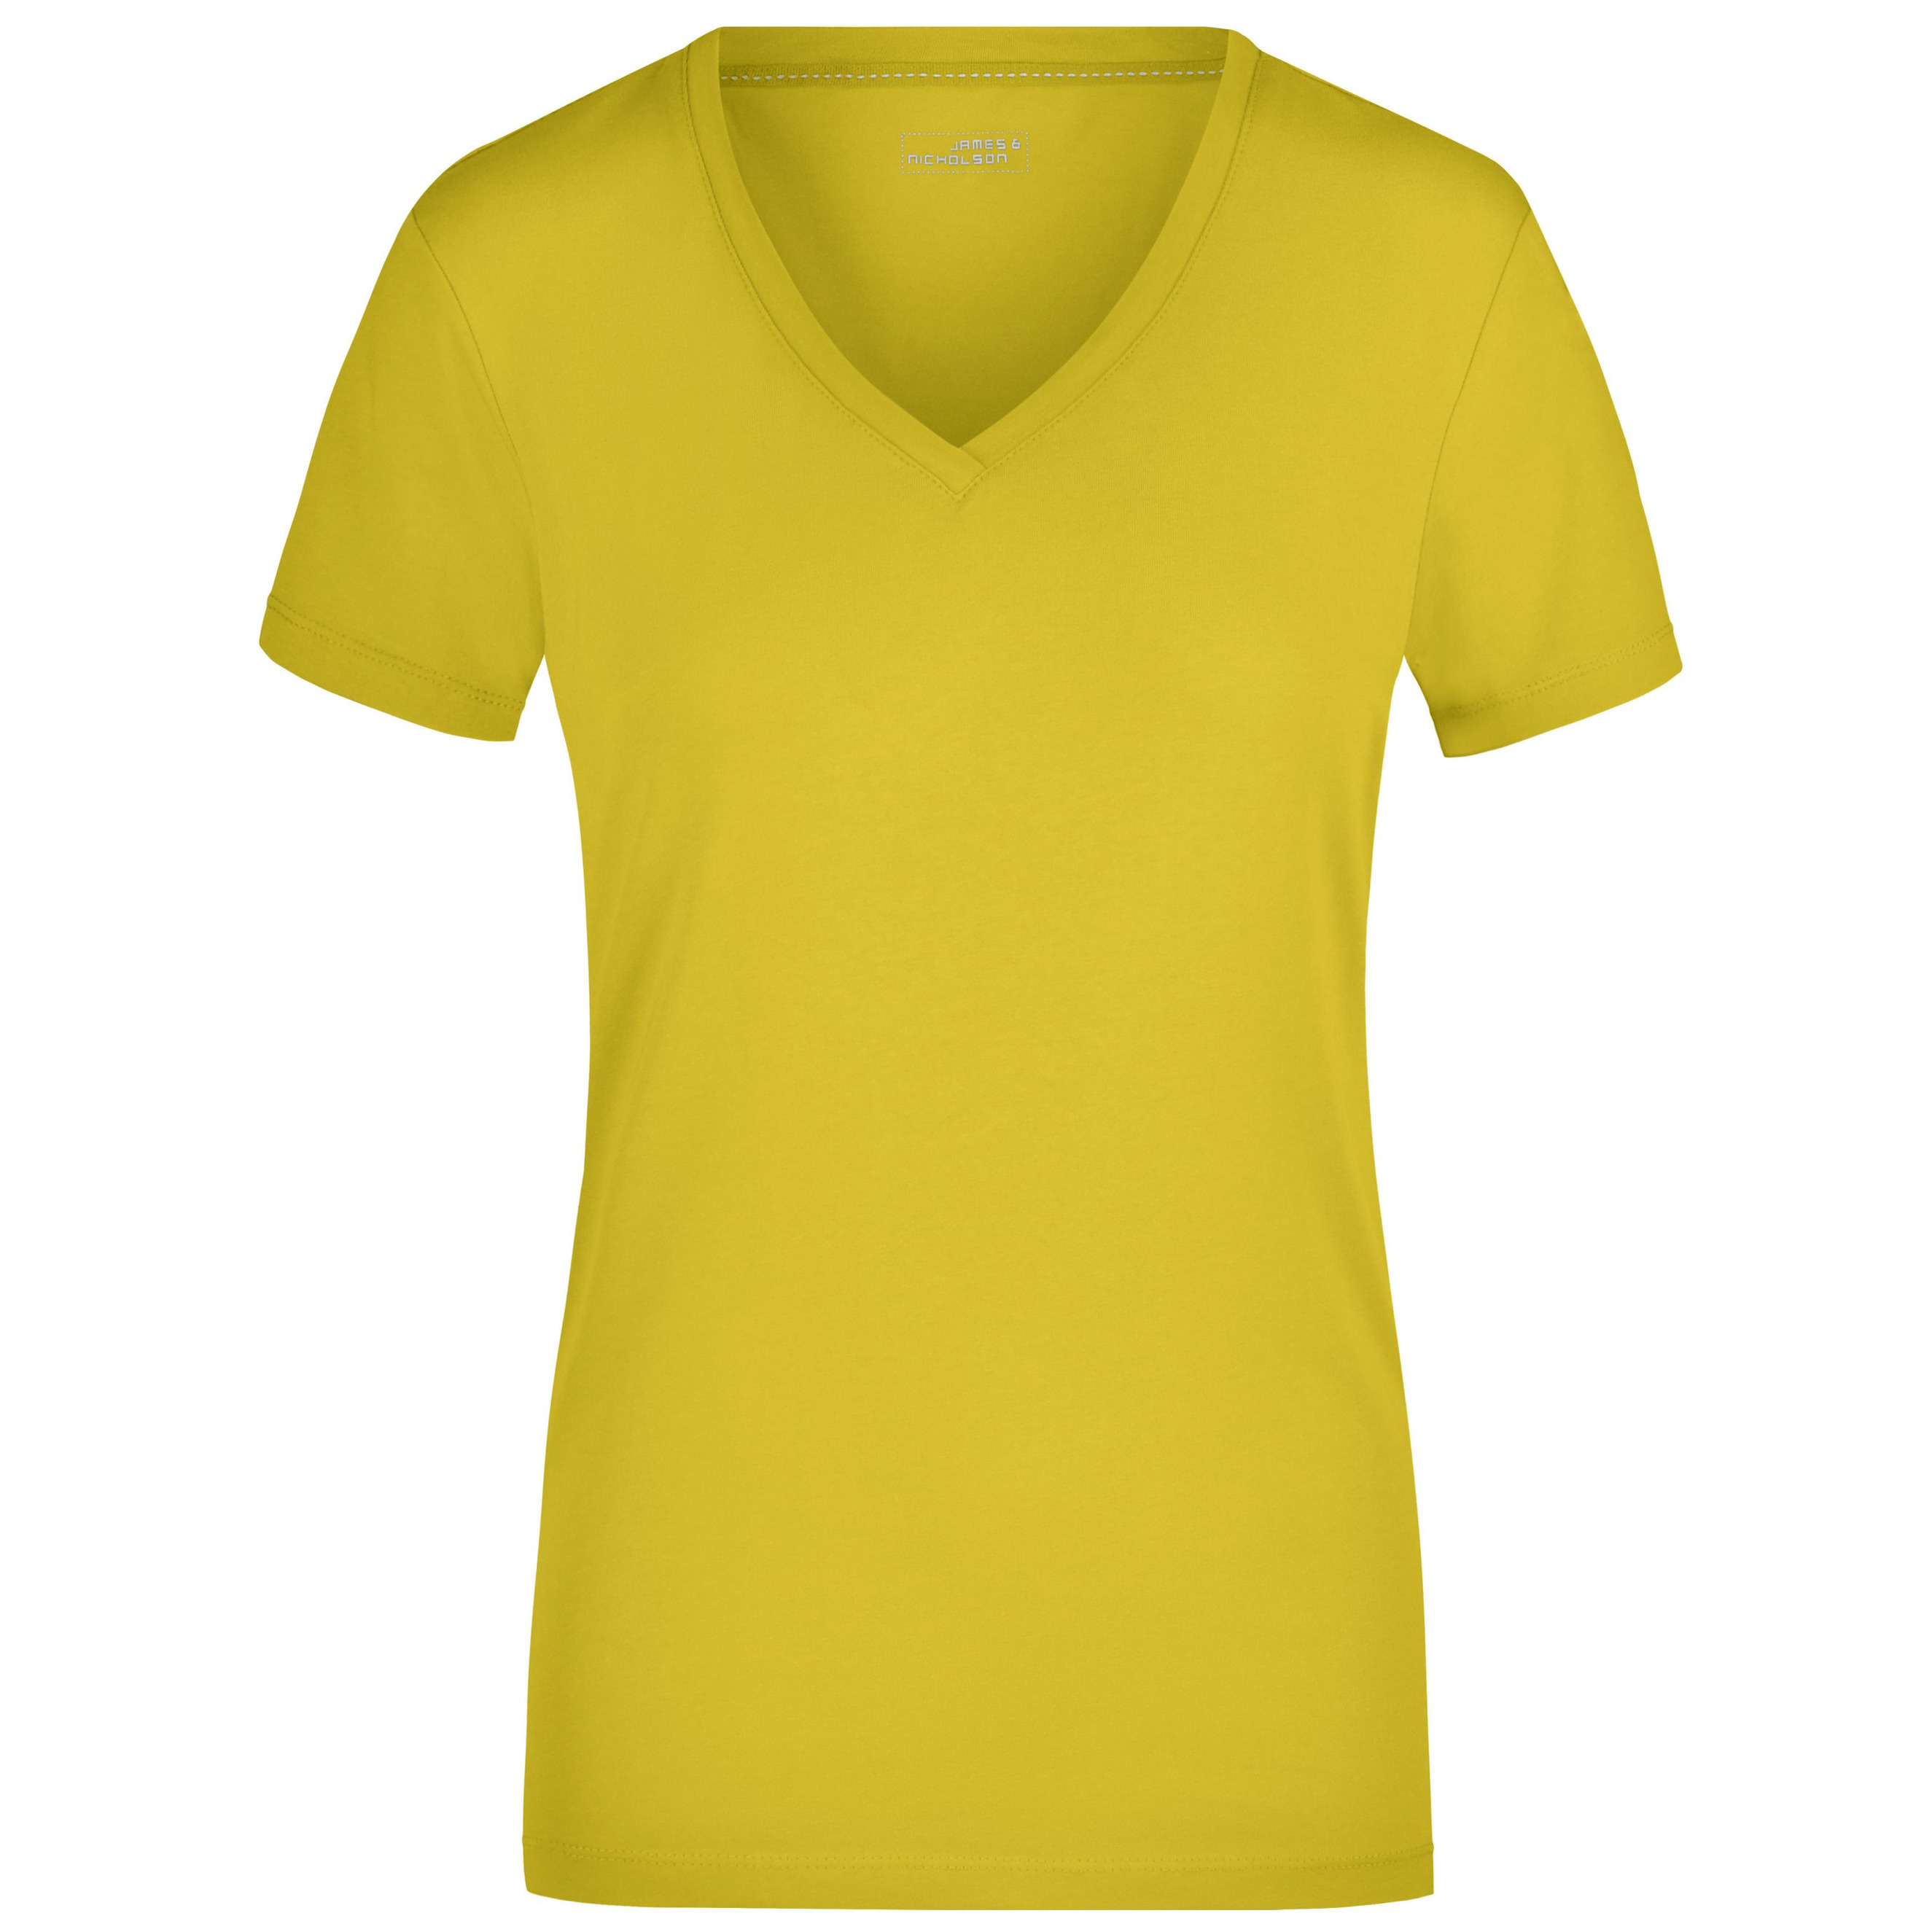 Oceaan elke dag Rubber Basic dames t-shirt V-hals geel bestellen voor € 15.99 bij het  Knuffelparadijs